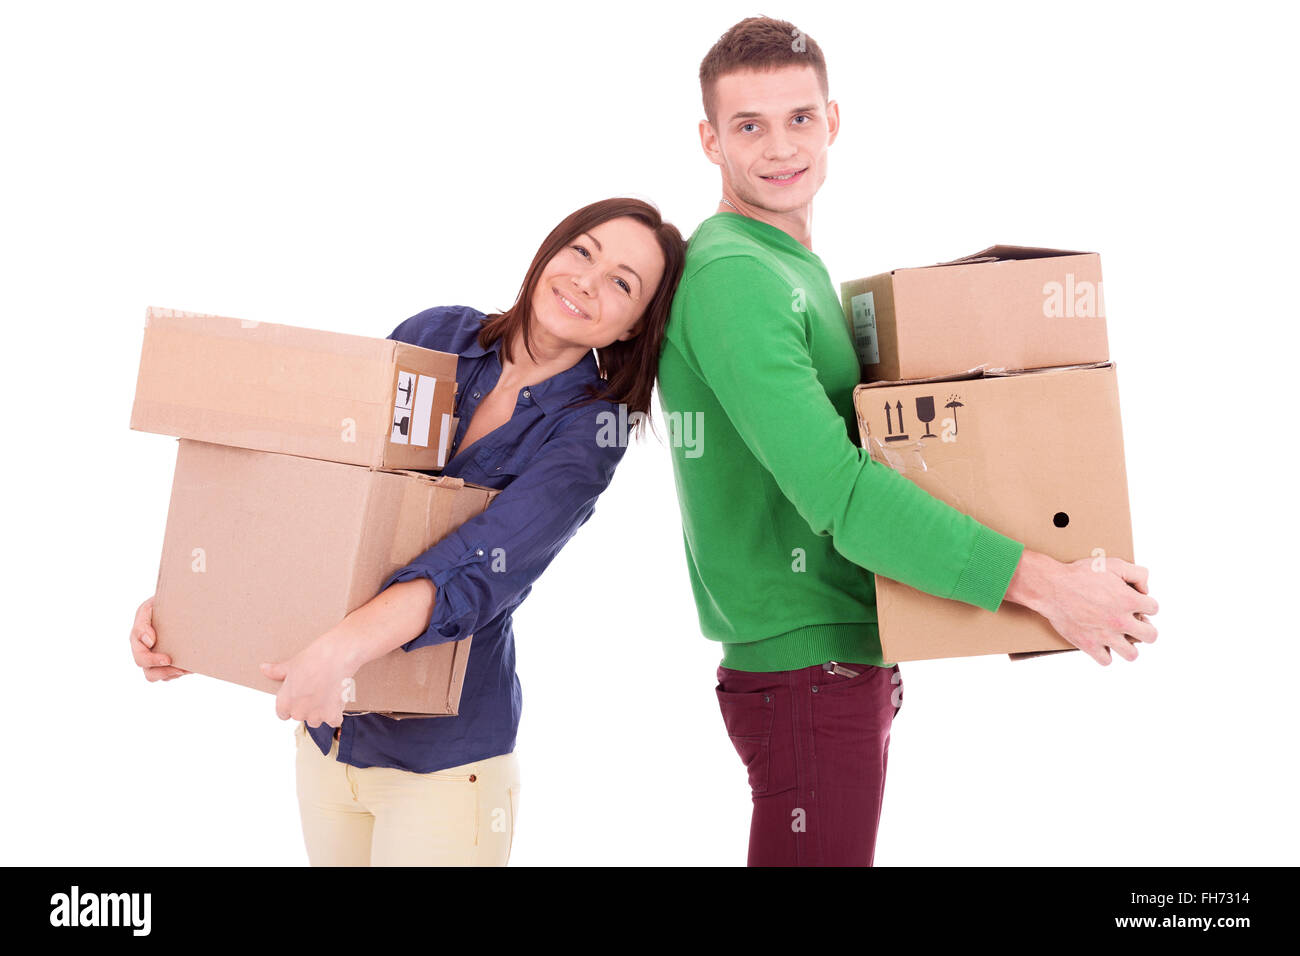 Un jeune couple habillé en passant des boîtes en carton. Peut-être passer à un nouvel appartement ou maison ensemble. Banque D'Images